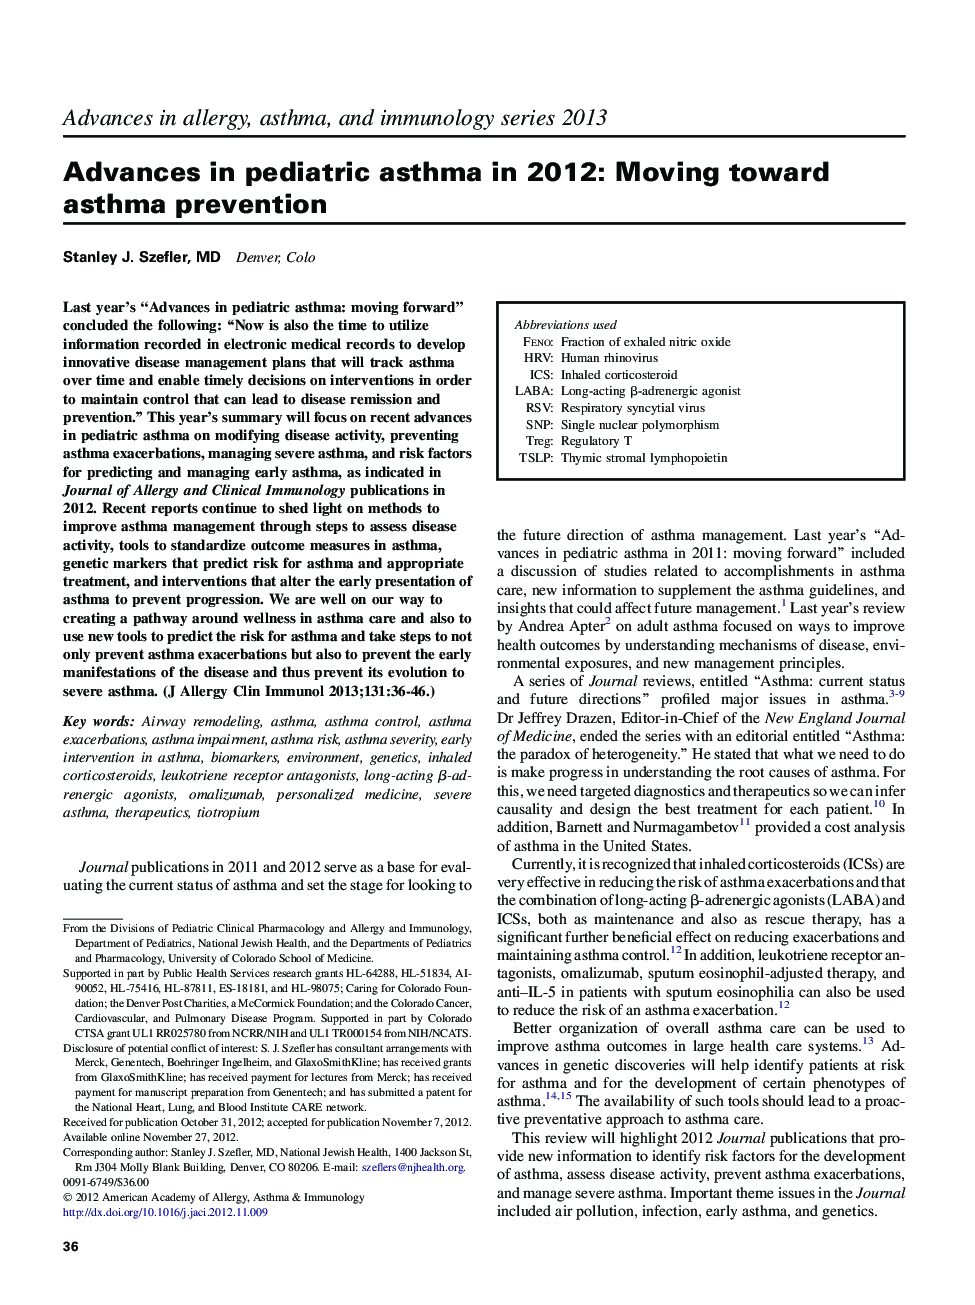 پیشرفت در آسم کودکان در سال 2012: پیشگیری از آسم 